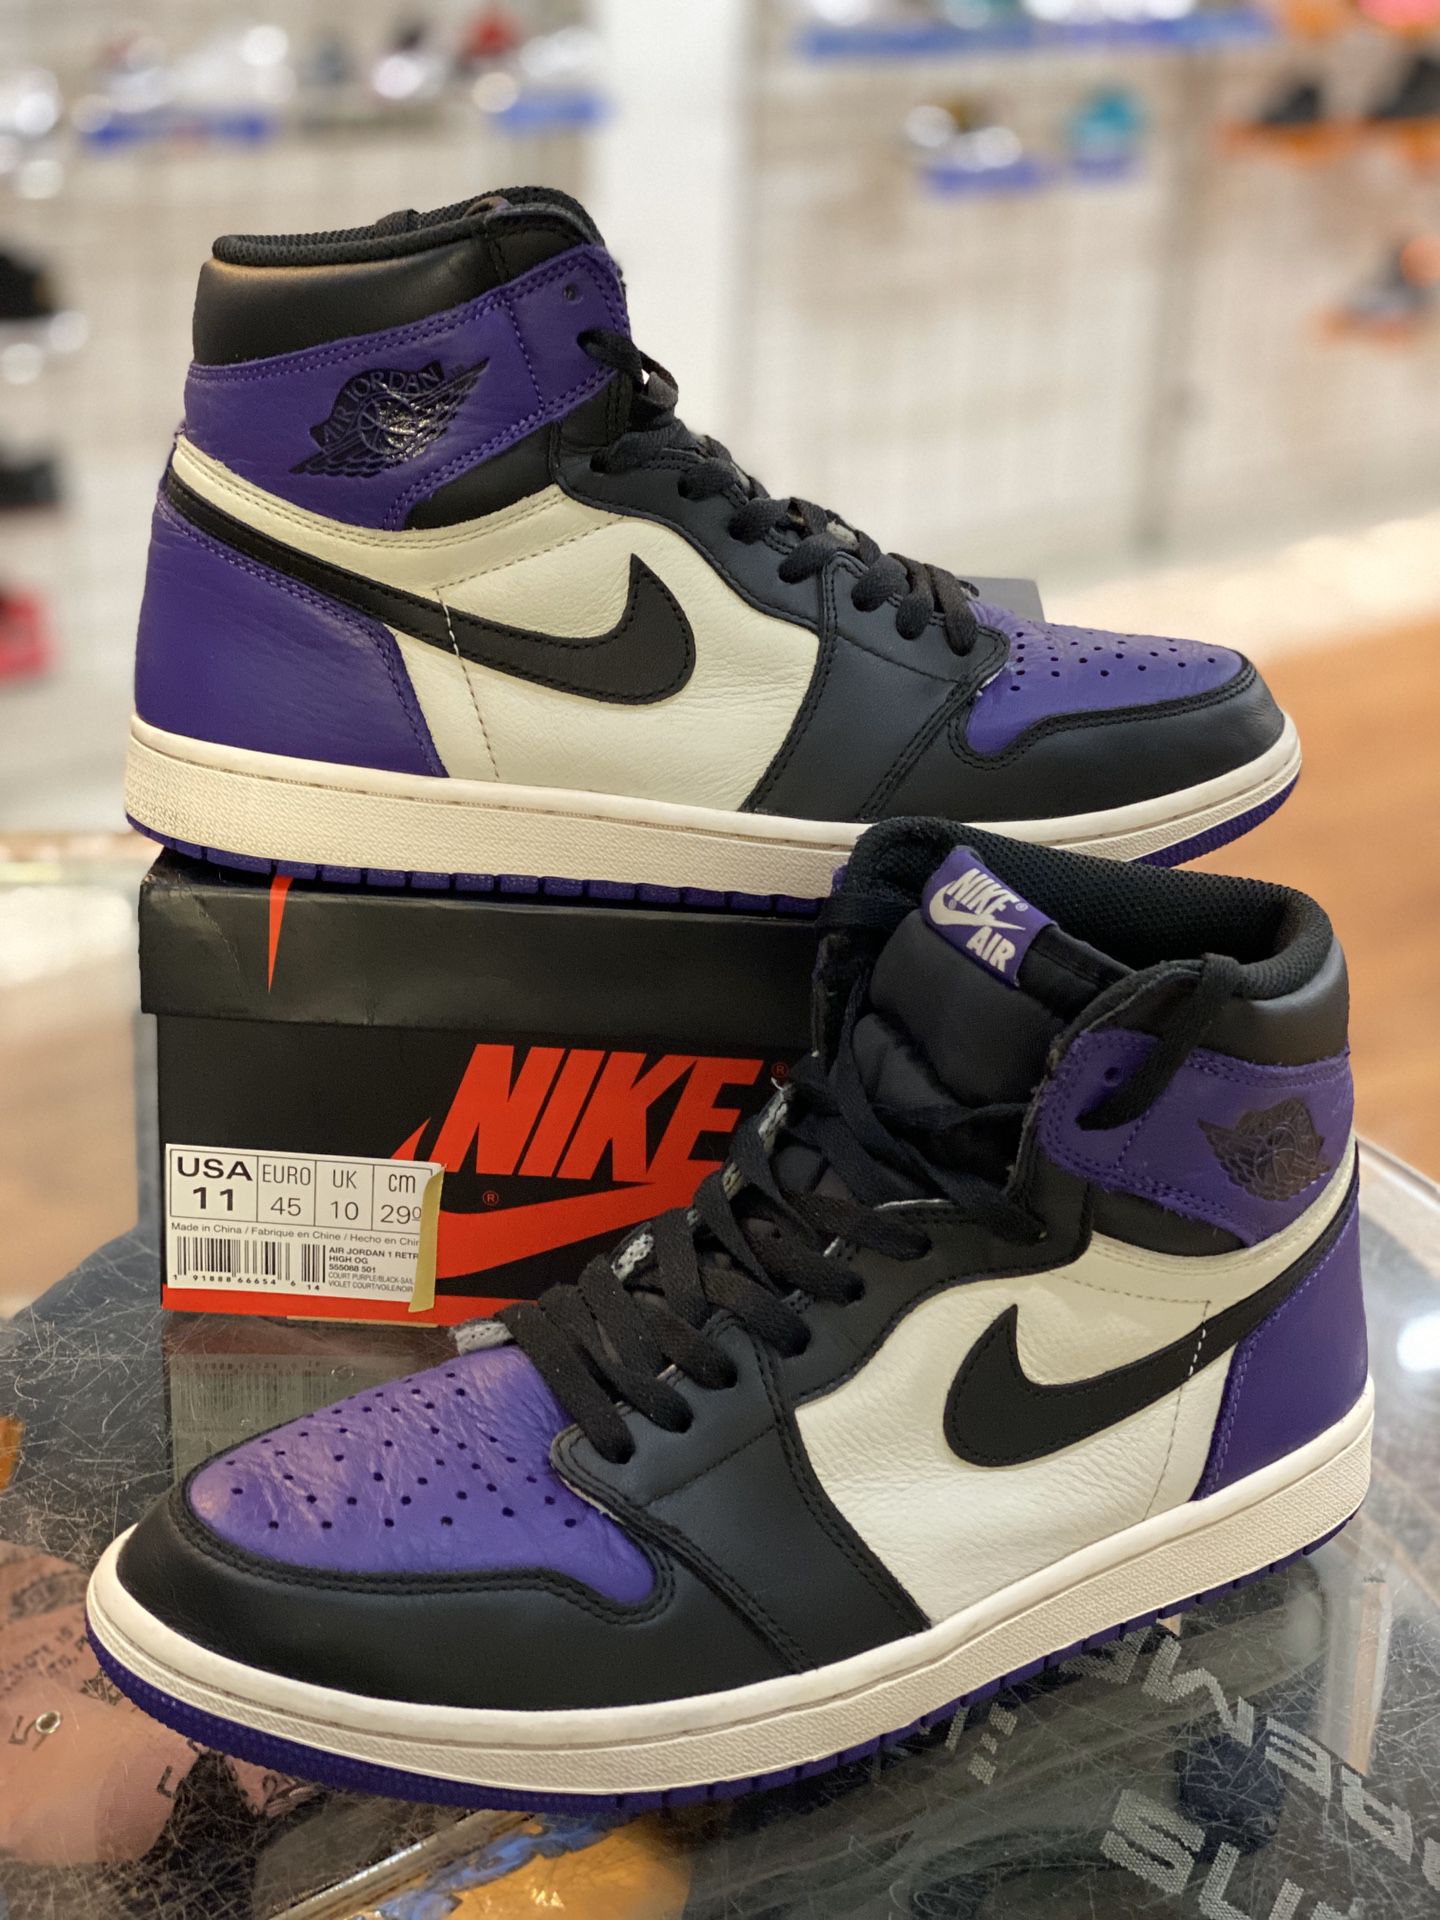 Court Purple 1s size 11